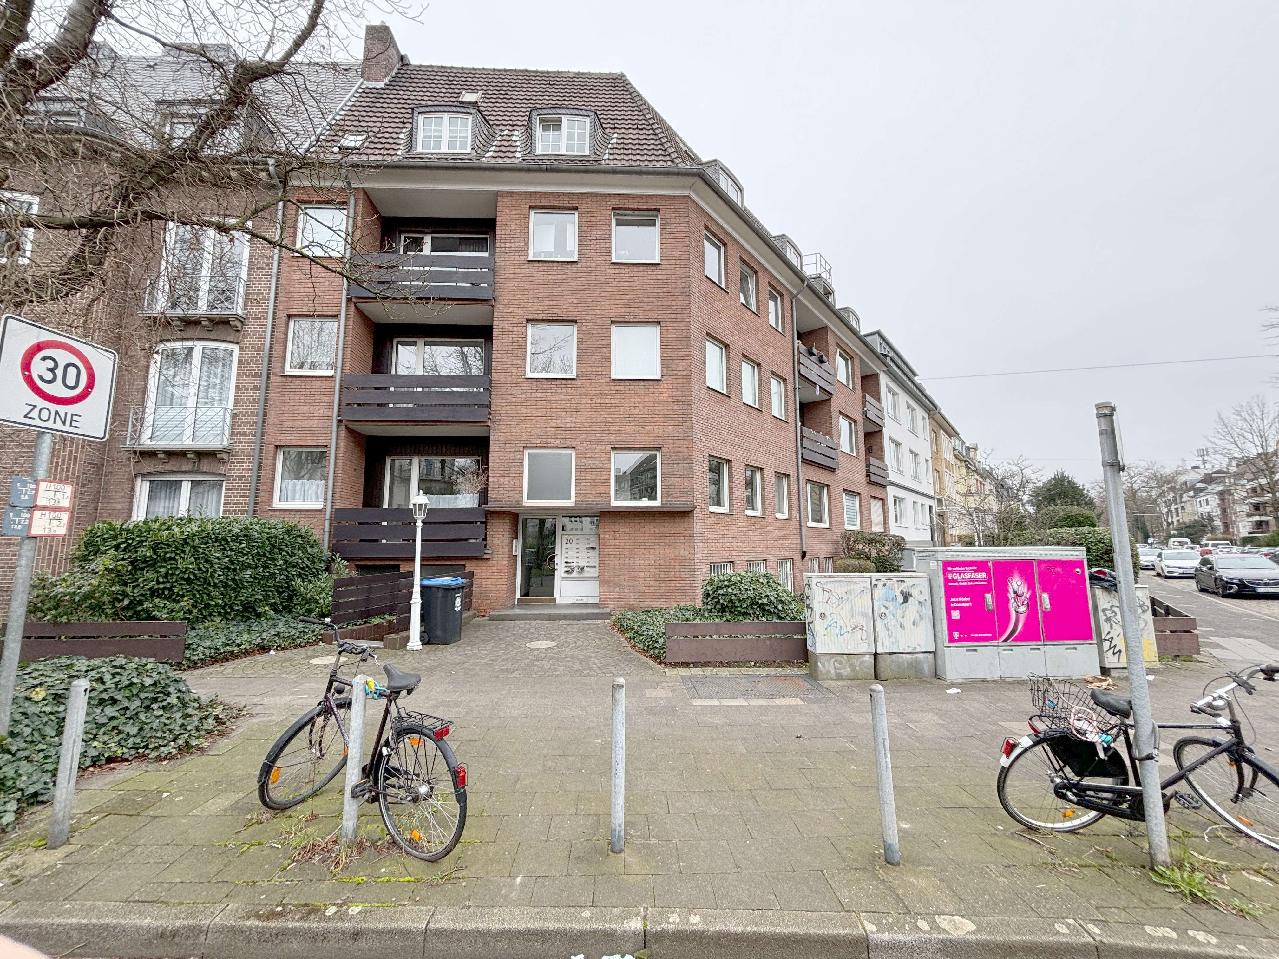 Vermietet! Düsseldorf: Schöne 2-Zimmerwohnung mit Einbauküche in gepflegtem Mehrfamilienhaus